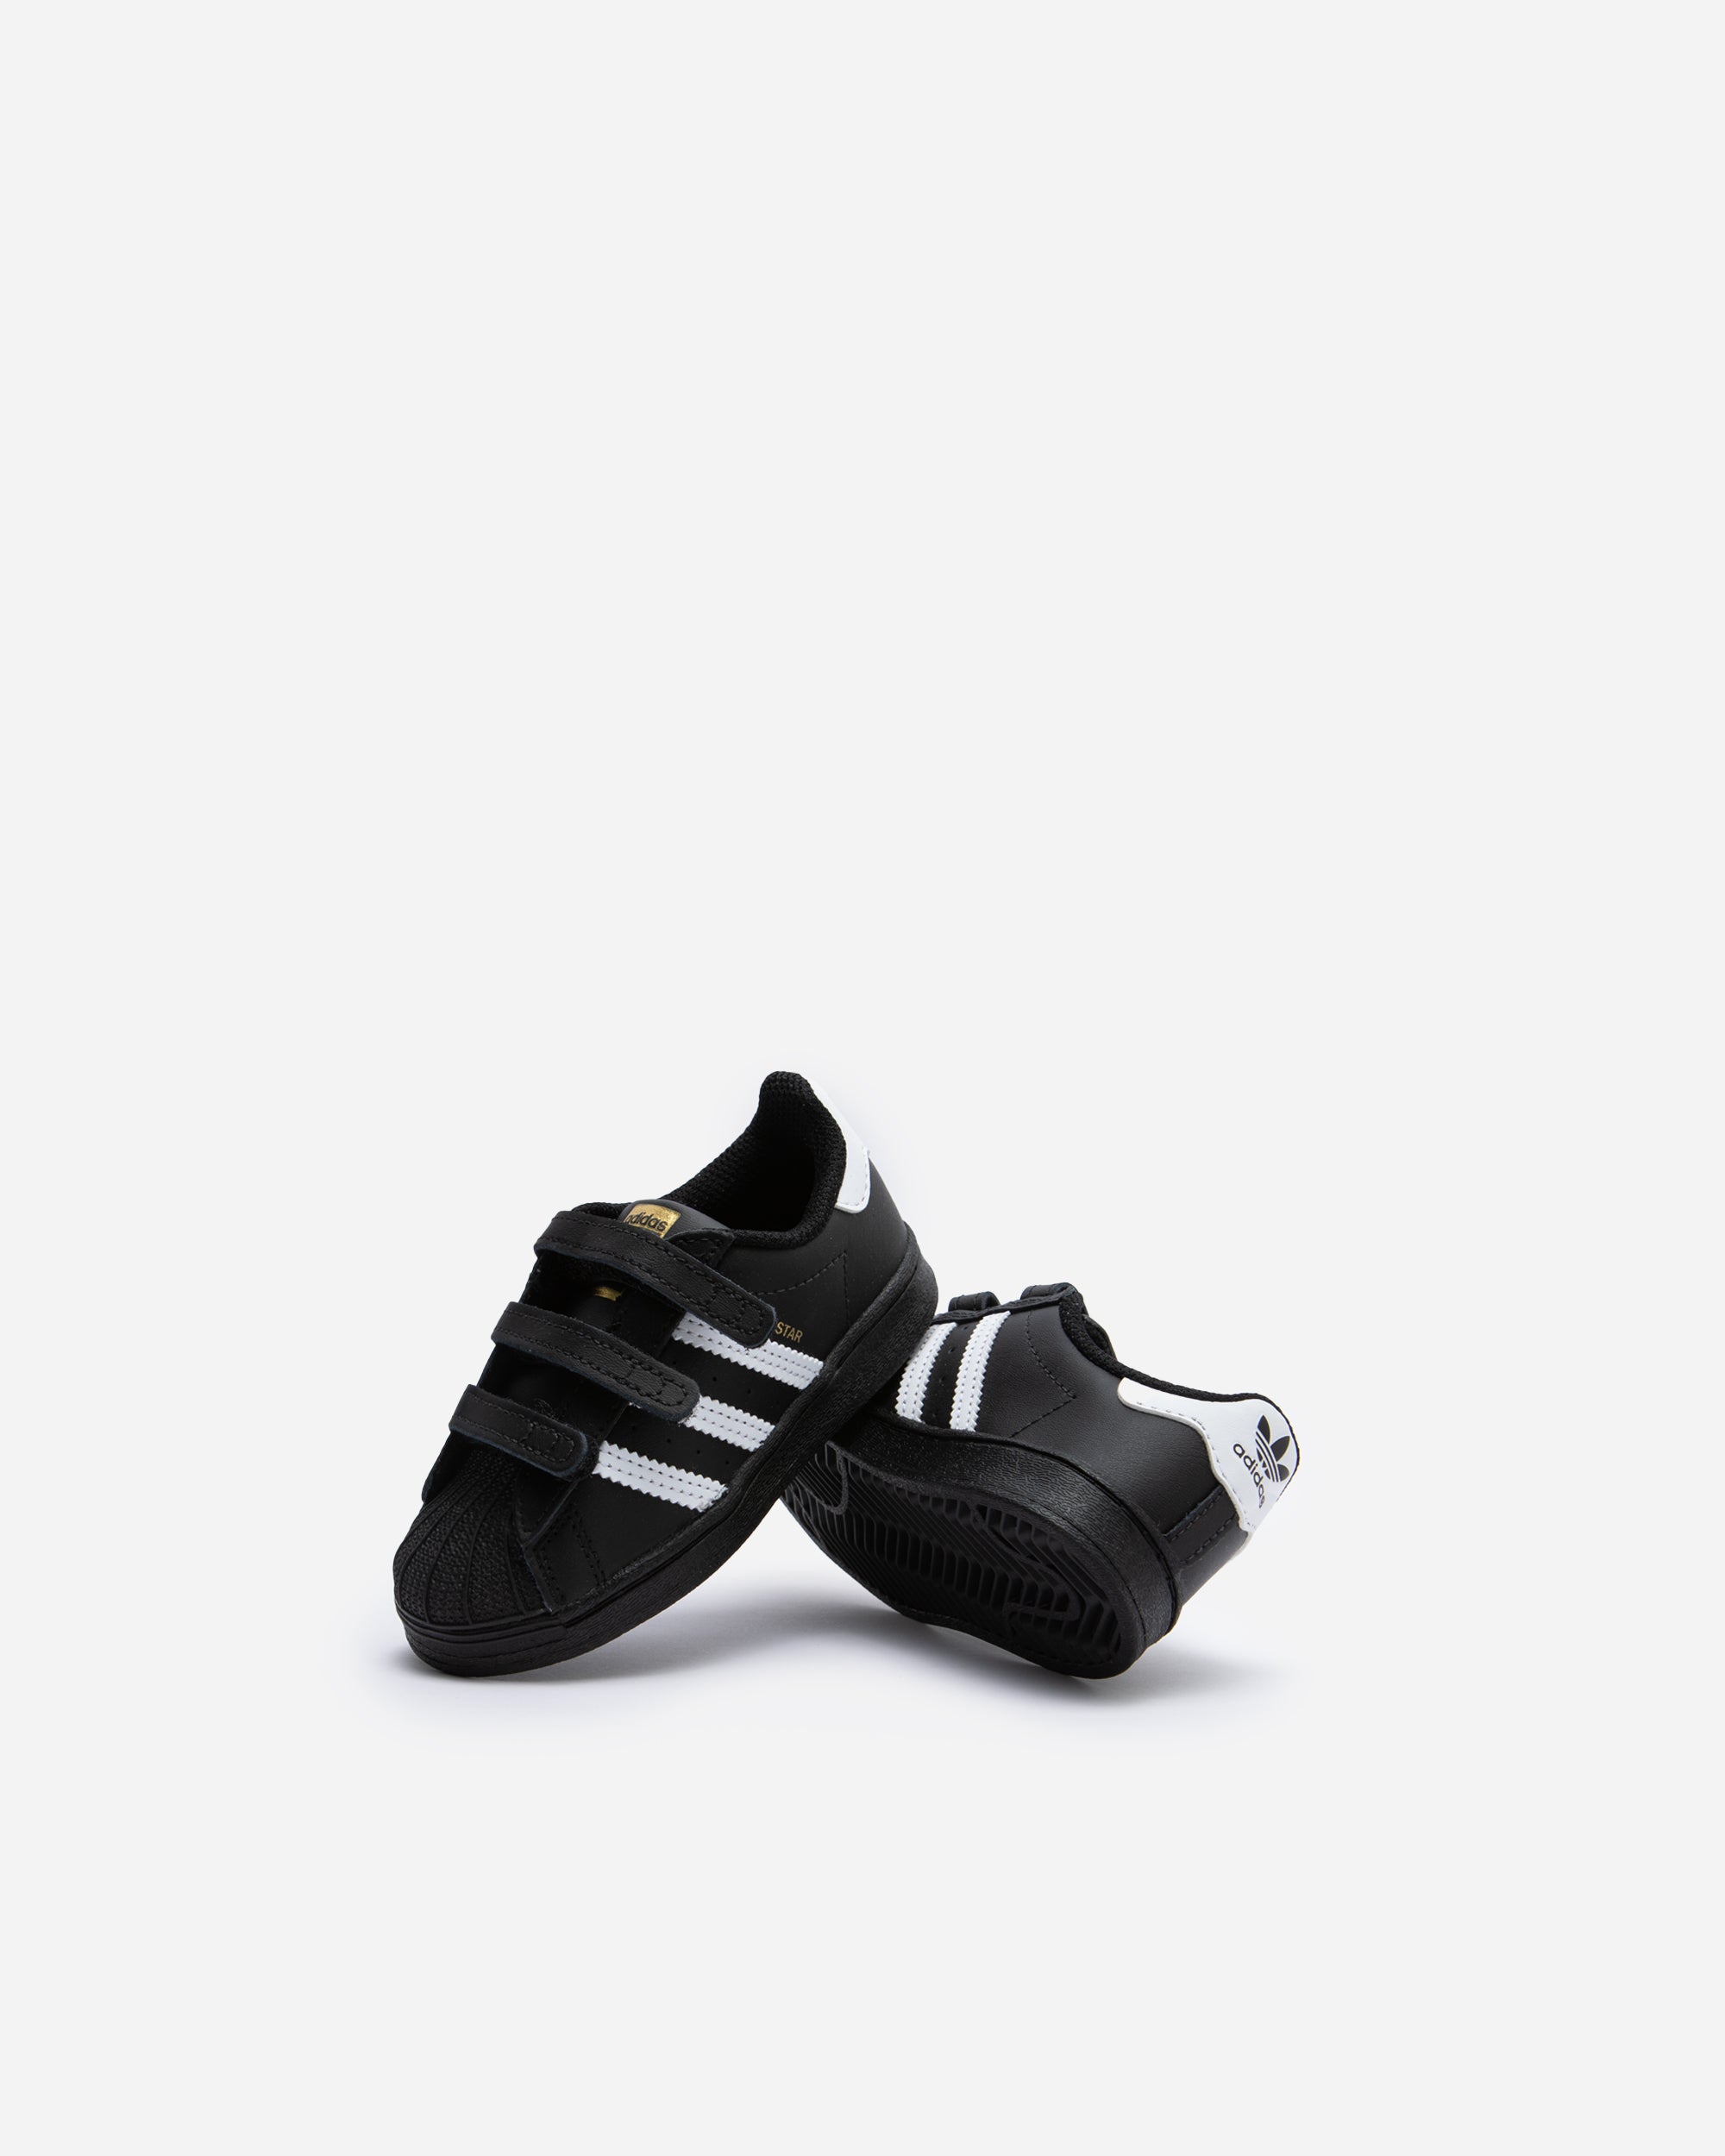 Adidas Ori Superstar (Toddler) Black/White EF4843